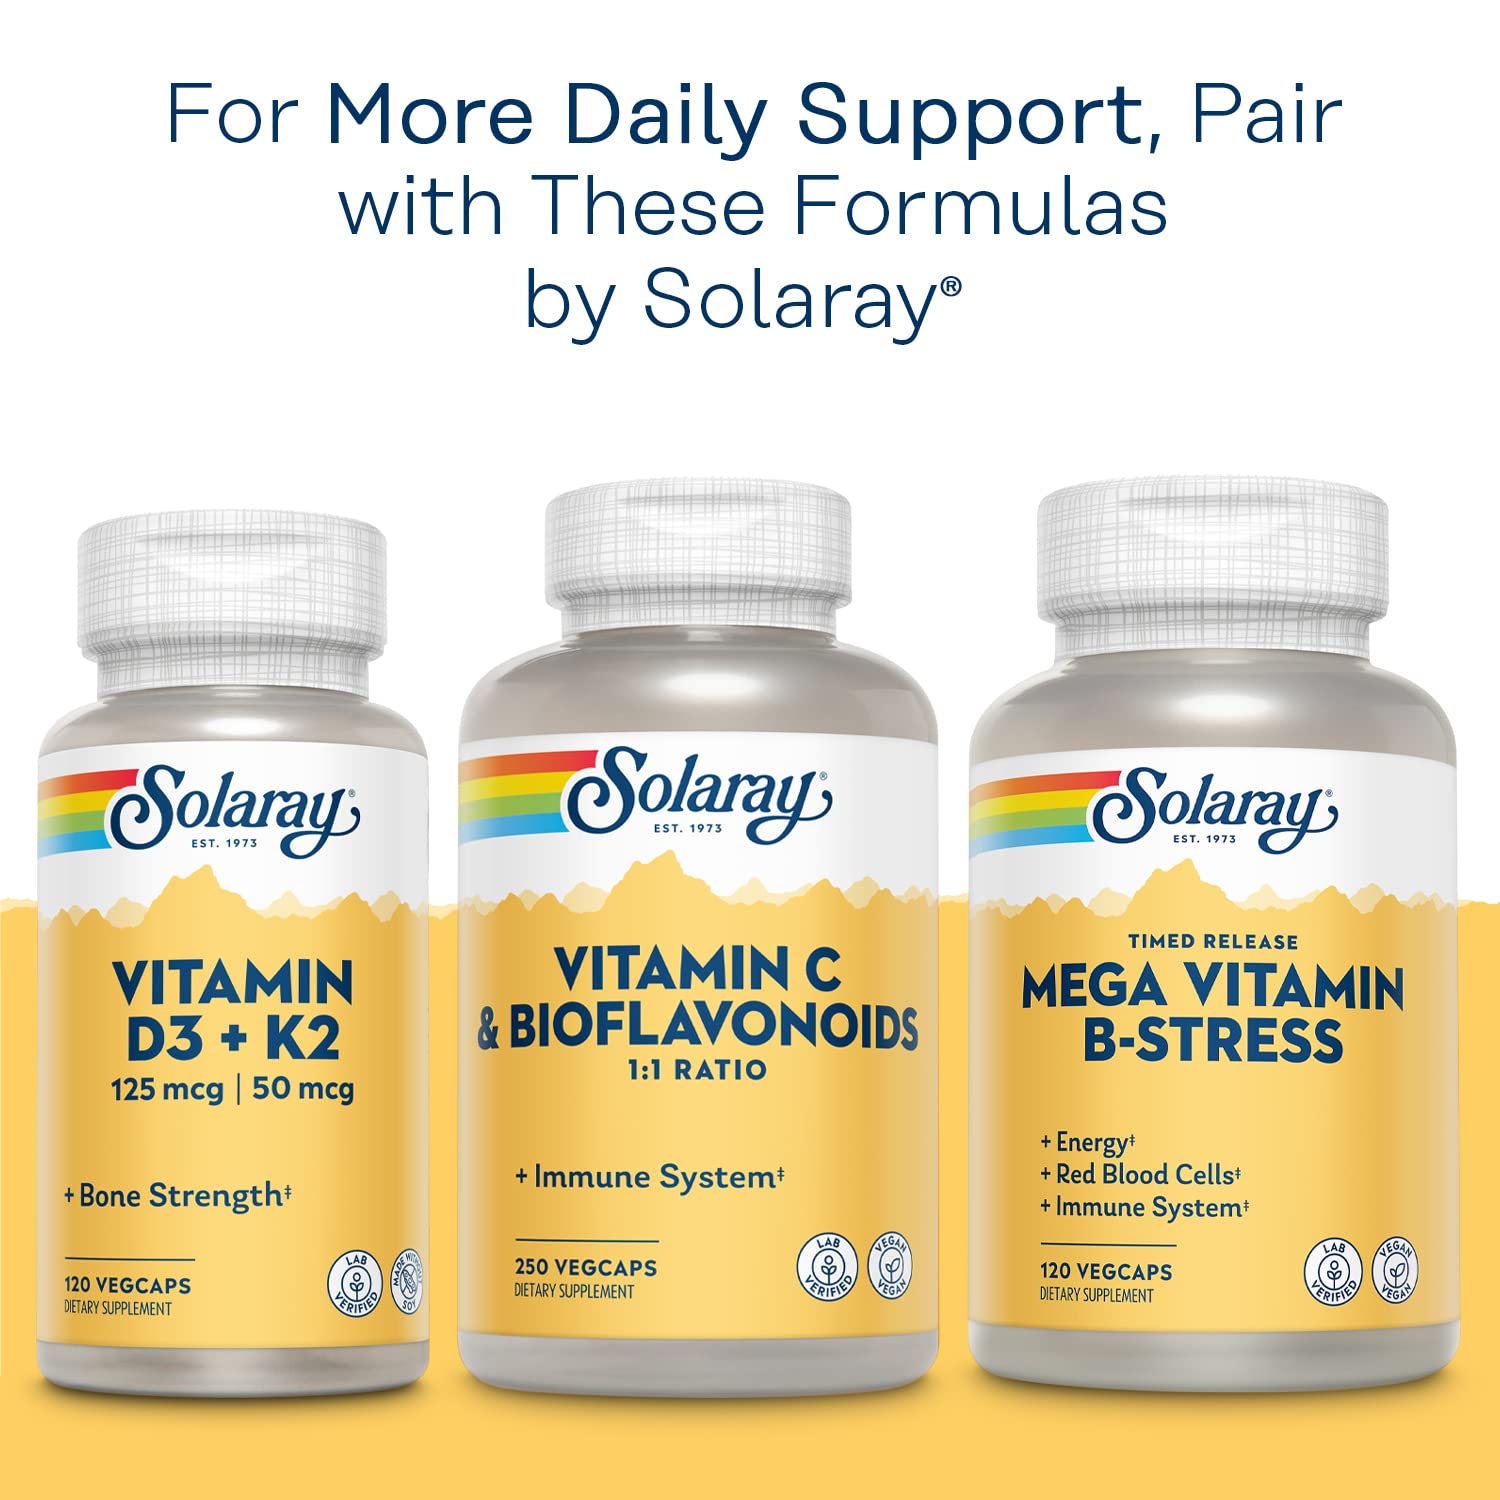 Solaray Calcium Magnesium Citrate 1:1 Ratio, Healthy Bones, Teeth, Muscle & Nervous System Support, 30 Serv, 180 VegCaps